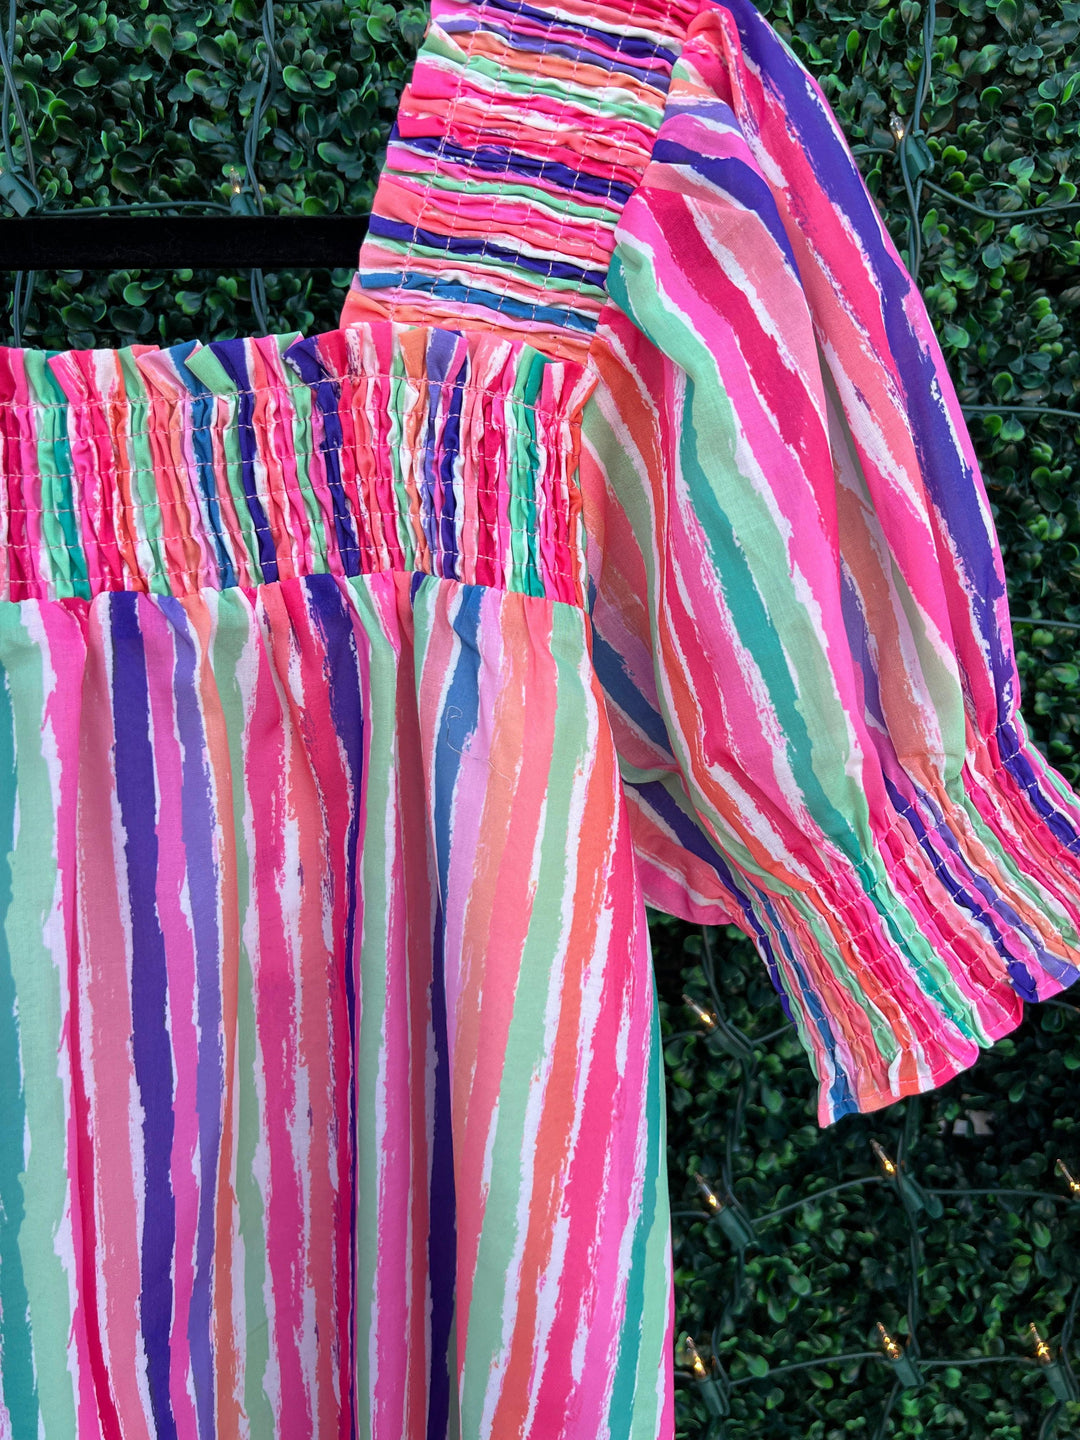 vivid rainbow stripe blouse joy joy bran dlight weight spring summer rainbow best online boutique